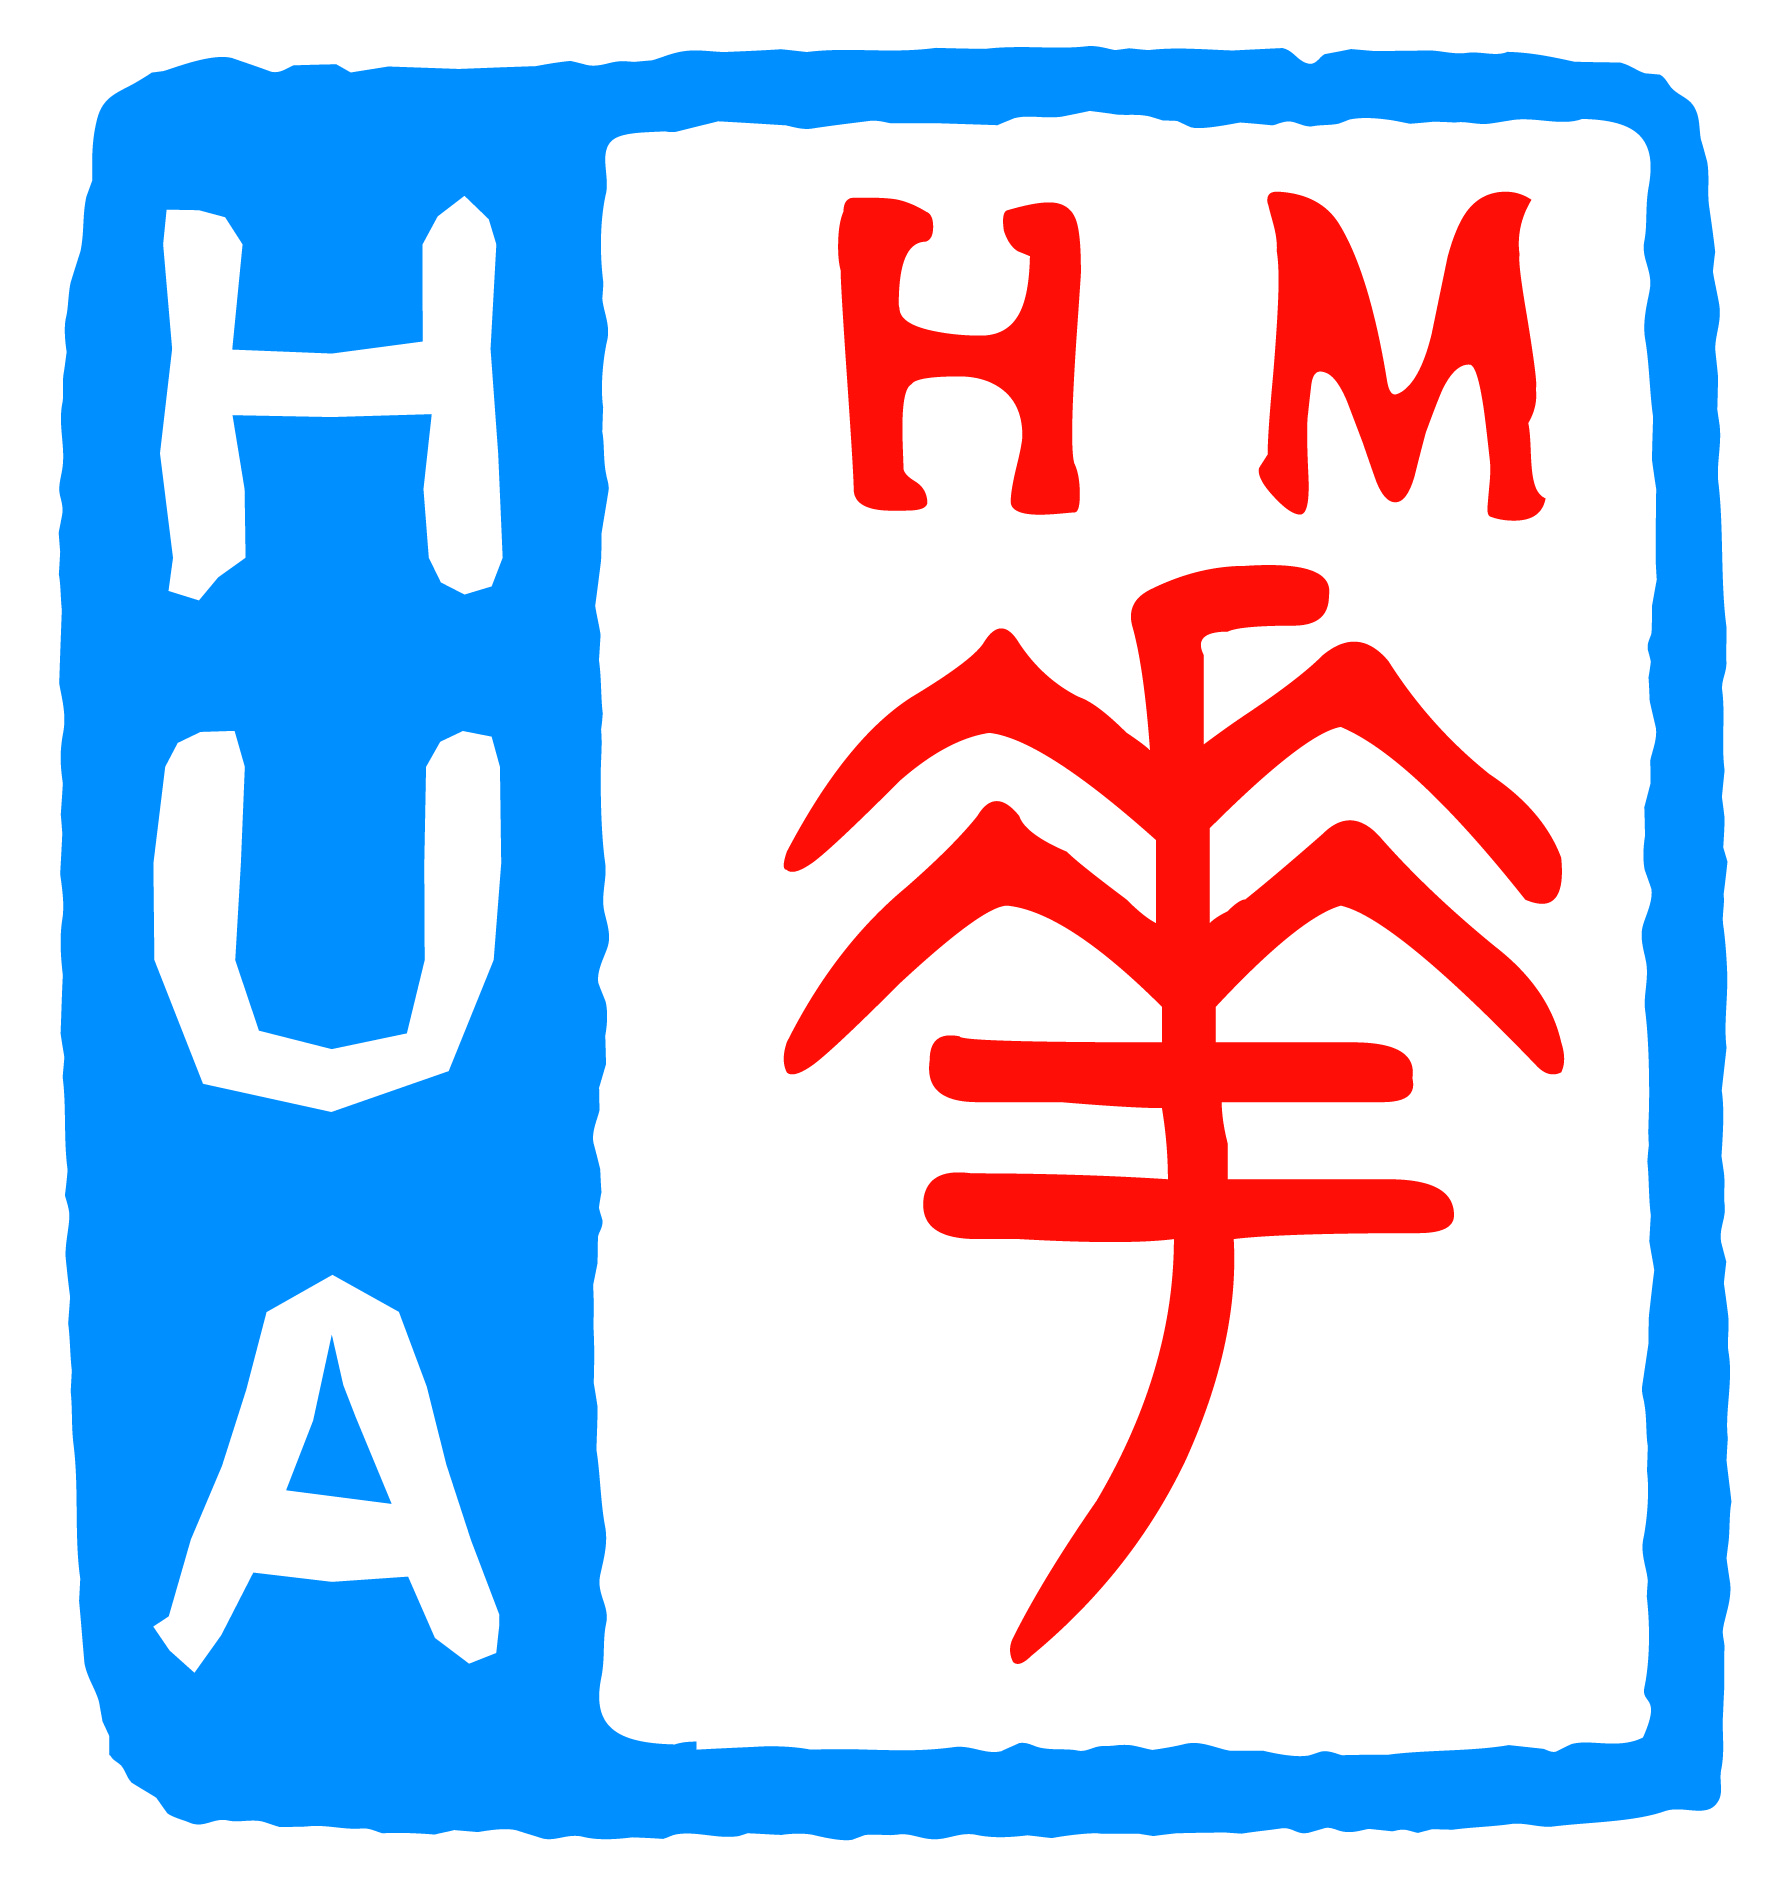 Hua Medicine